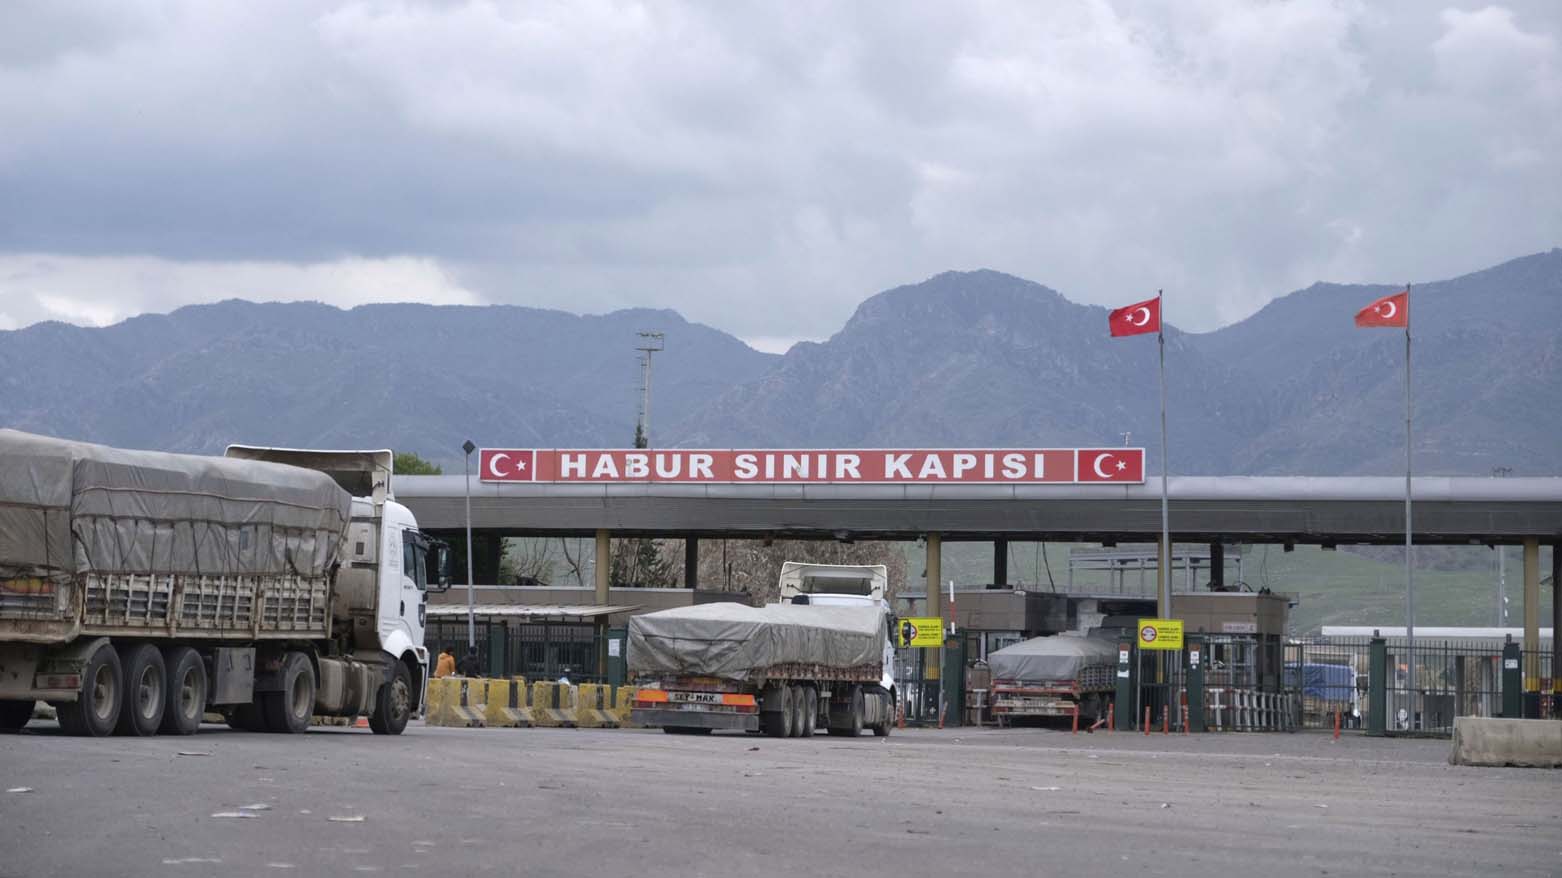 "حجم مبادلات بازرگانی اقلیم کوردستان با ترکیه در حال افزایش است"